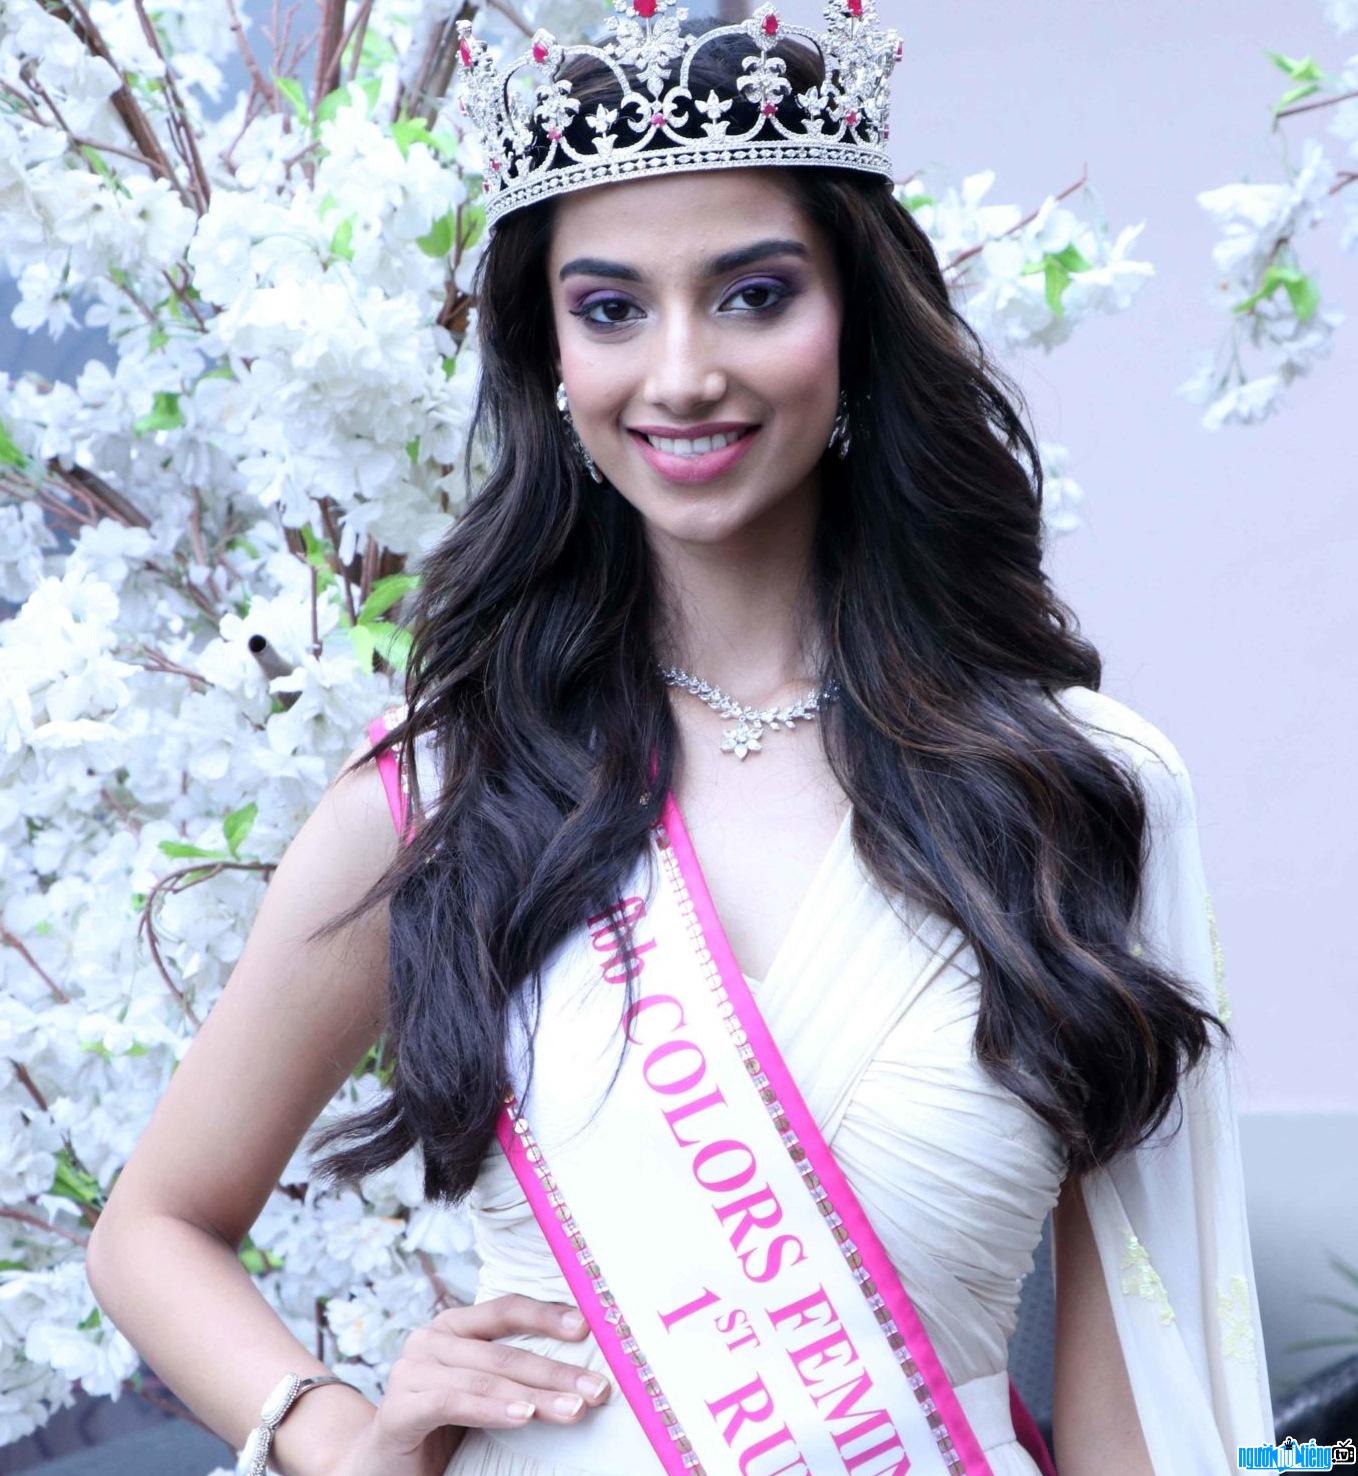 Cận cảnh nhan sắc của hoa hậu Ấn Độ Meenakshi Chaudhary